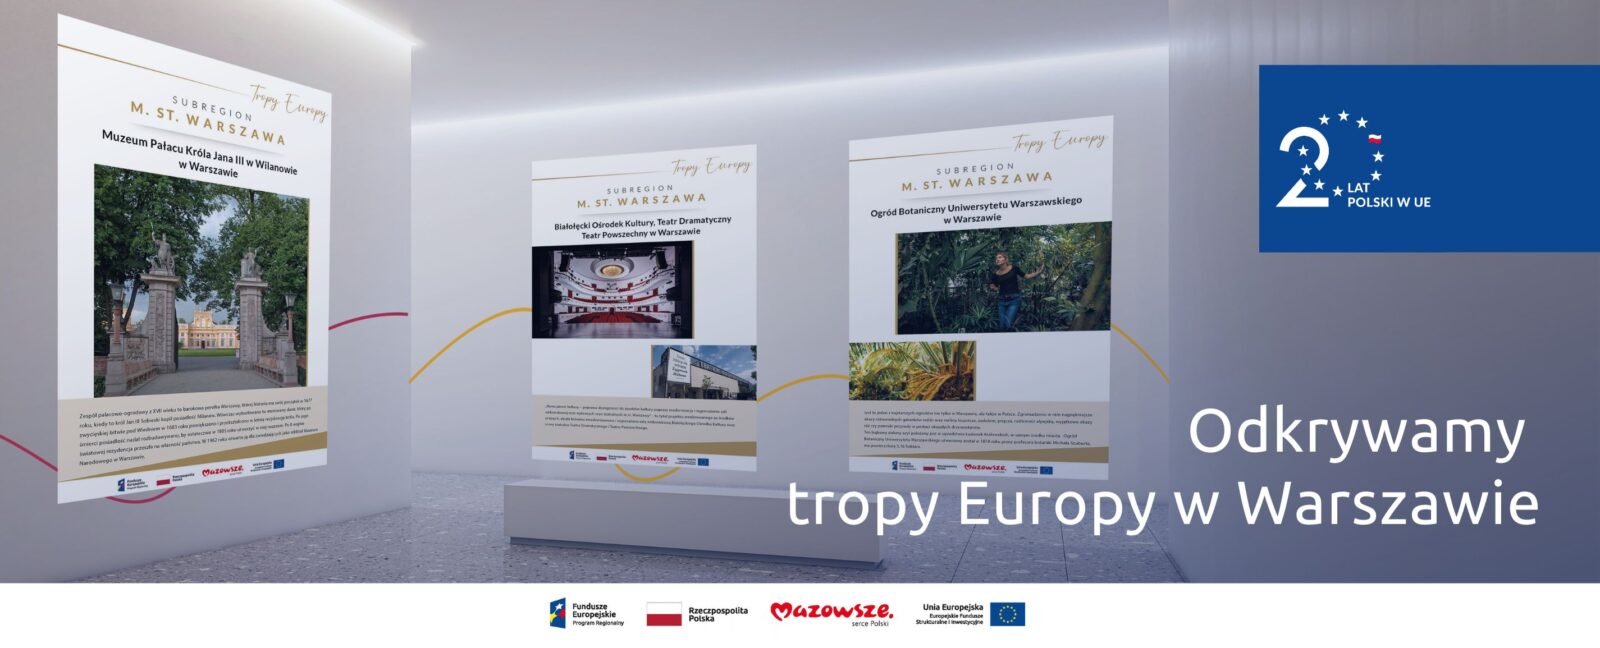 Na grafice znajduje się hasło: Odkrywamy tropy Europy. W tle zdjęcie wystawy, na której zaprezentowane są plansze z warszawskimi projektami.